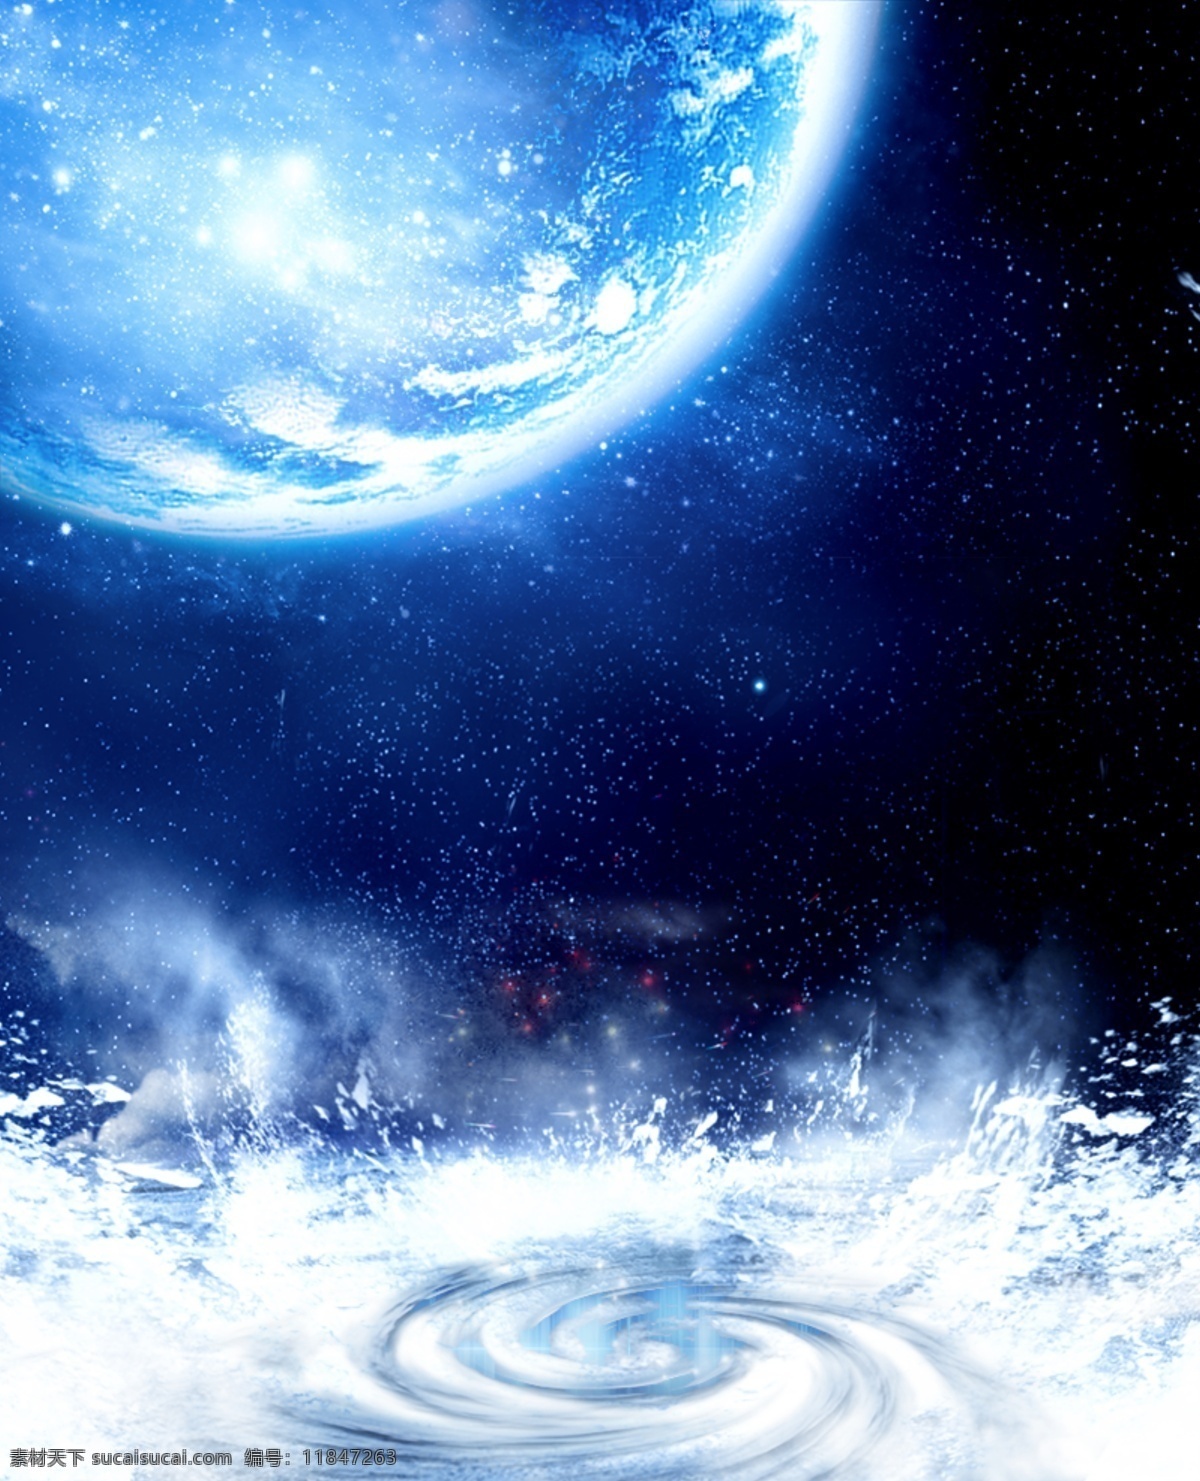 蓝色 星空 冰冻 水 旋涡 背景 海报 雪景海报 雪景 创意海报 月亮 蓝色球 冰 蓝色背景 水旋转 水浪